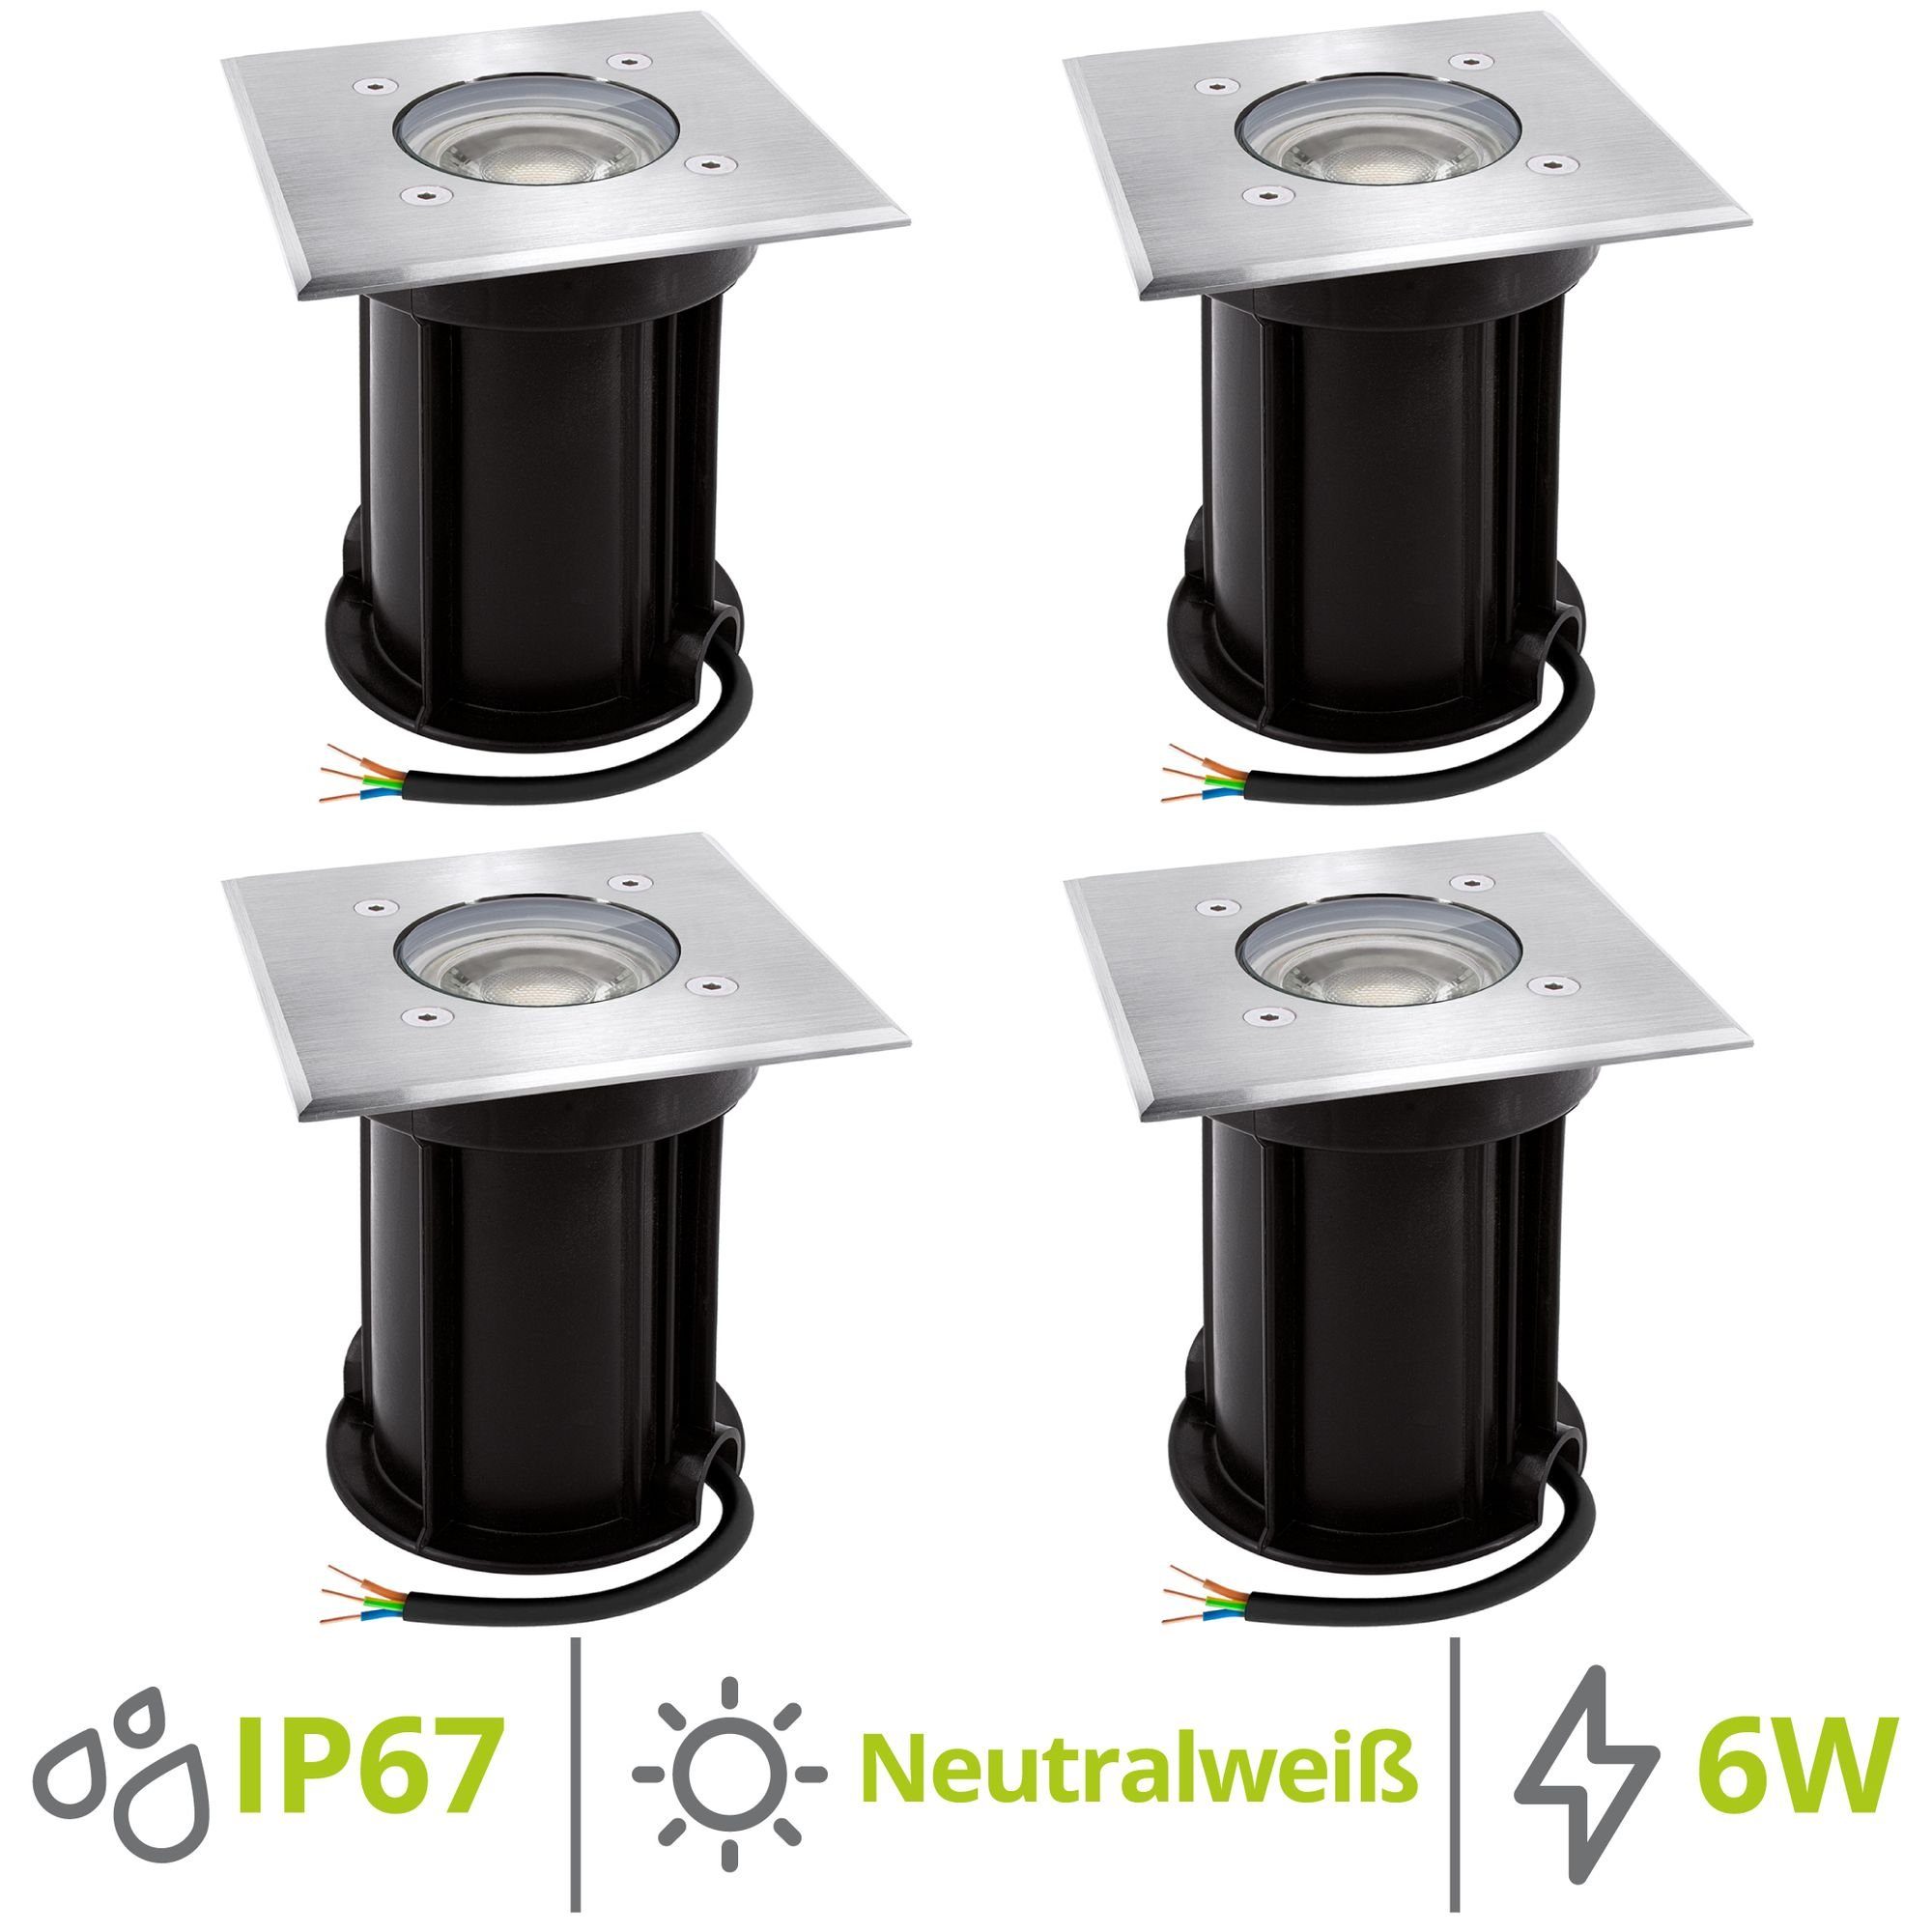 linovum LED Außen-Wandleuchte 4 x BOQU Bodeneinbaustrahler mit LED GU10 6W neutralweiss, Leuchtmittel inklusive, Leuchtmittel inklusive